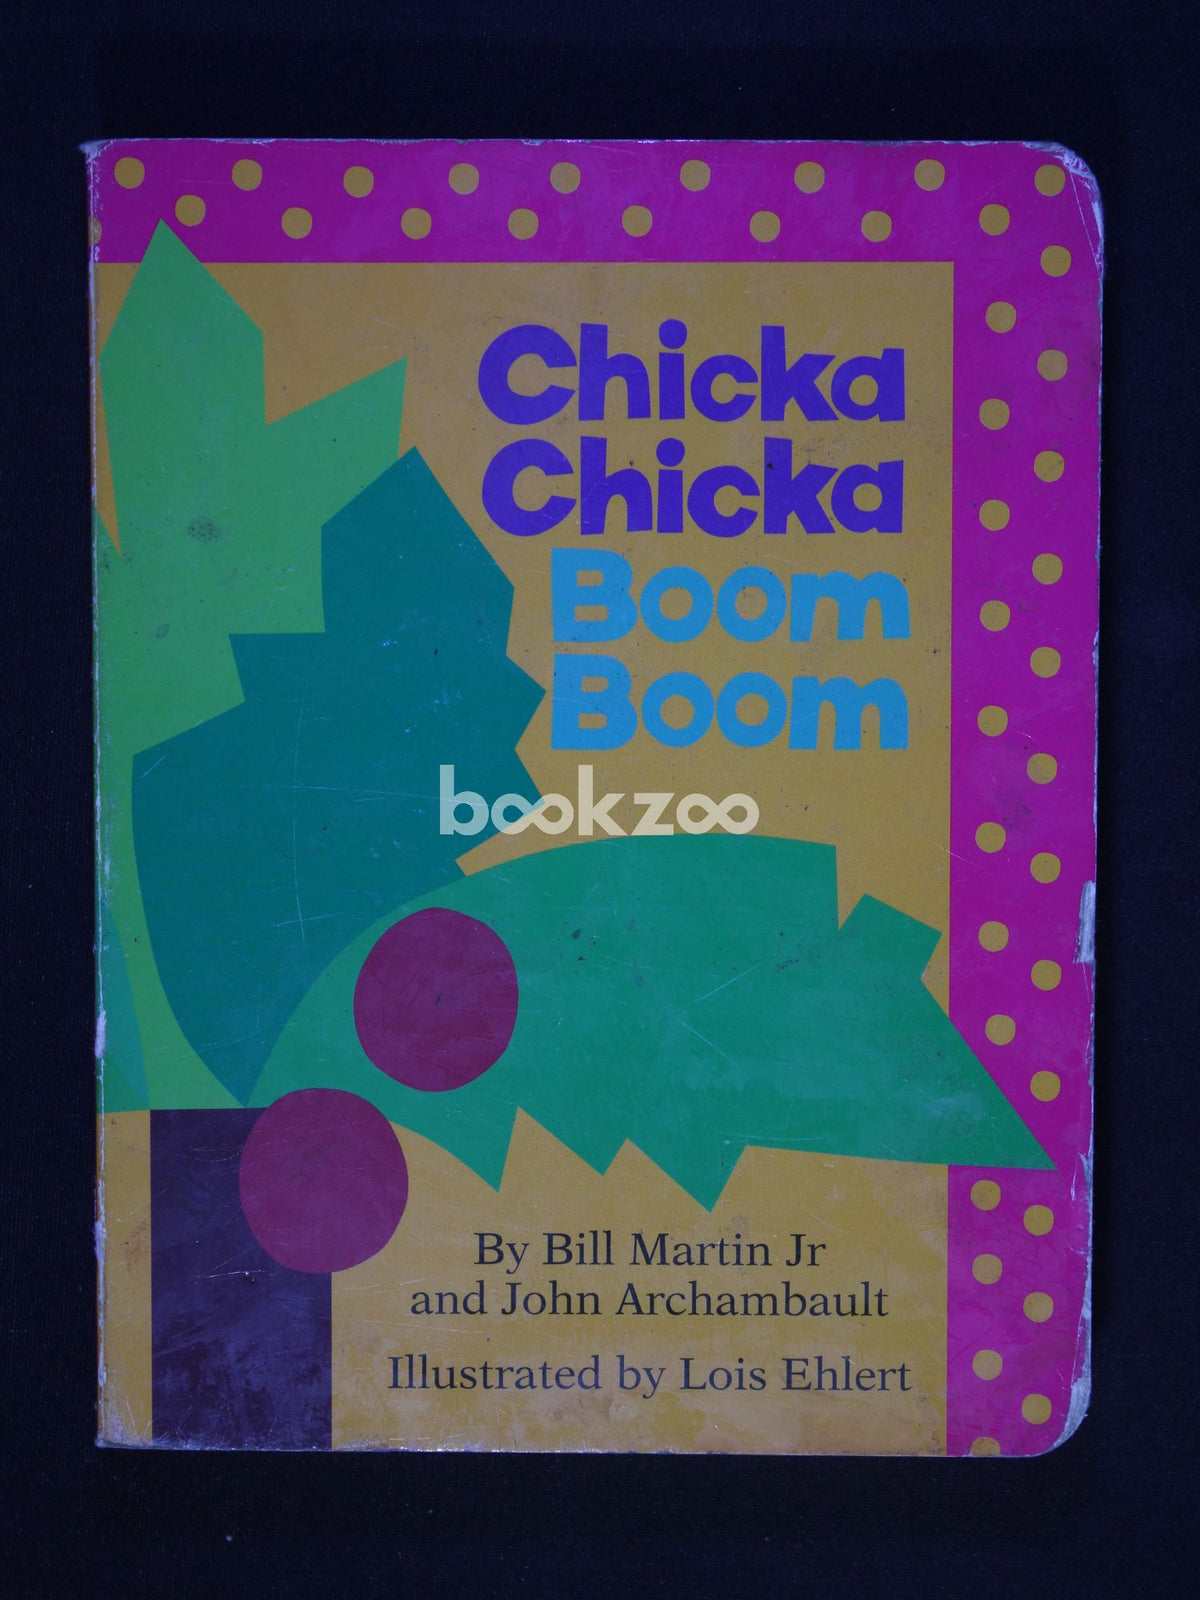 Buy Chicka Chicka Boom Boom by Bill Martin Jr. & John Archambault ...